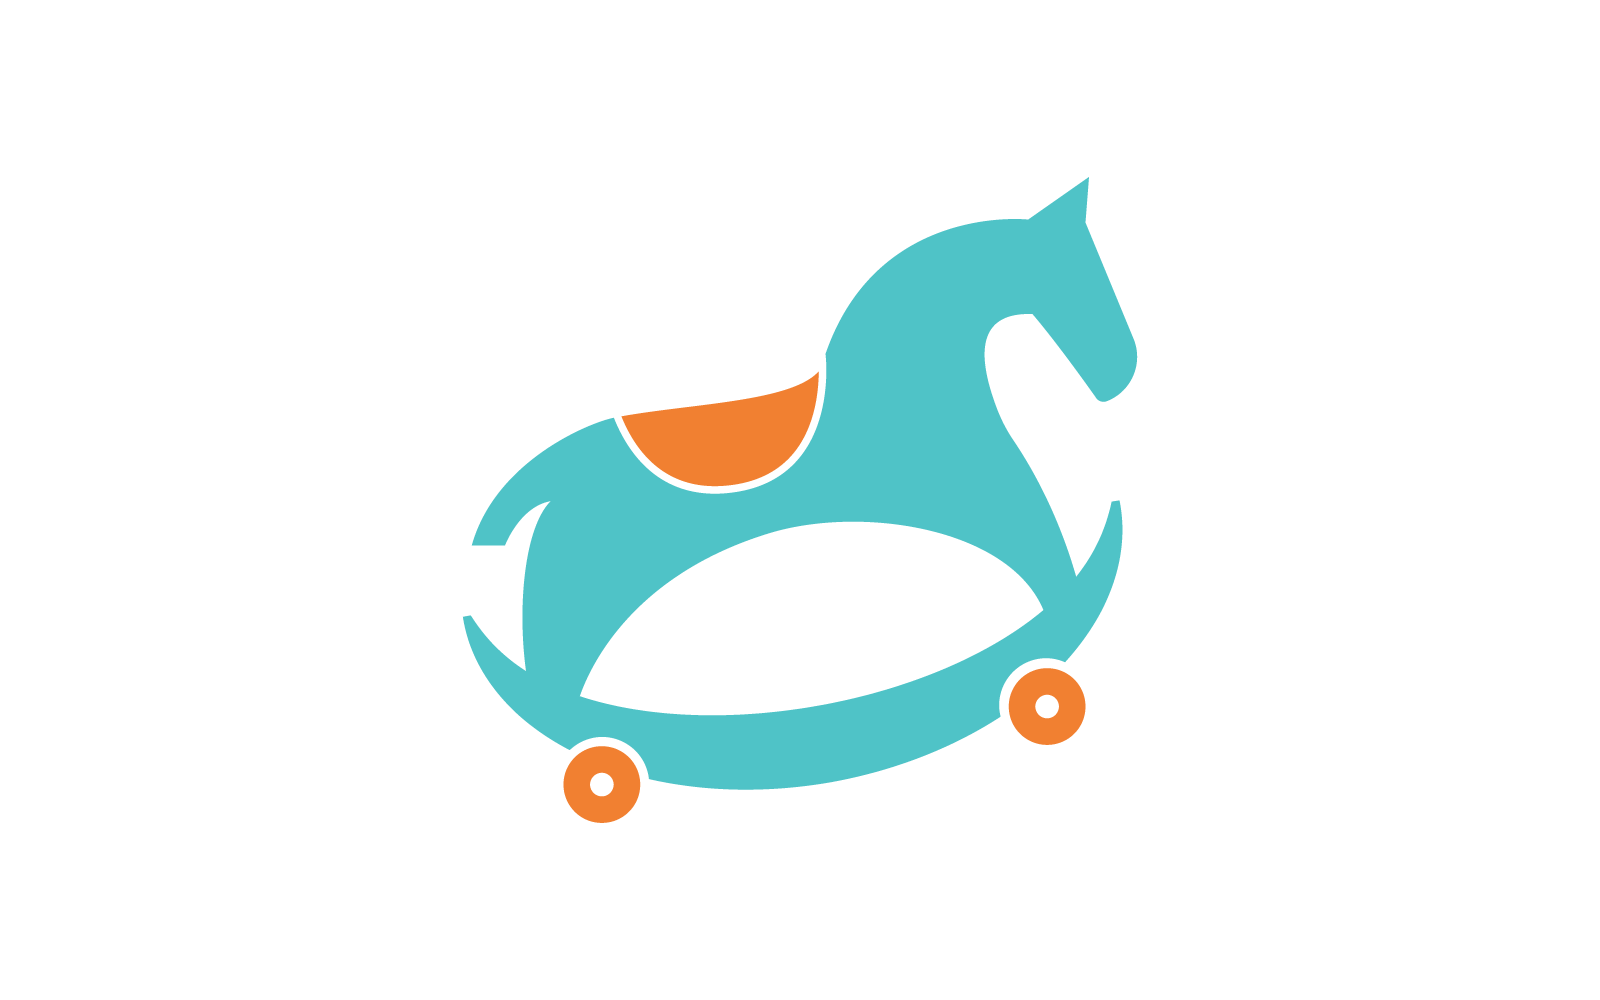 Rocking horse toy kids shop logo illustration vector flat design Logo Template